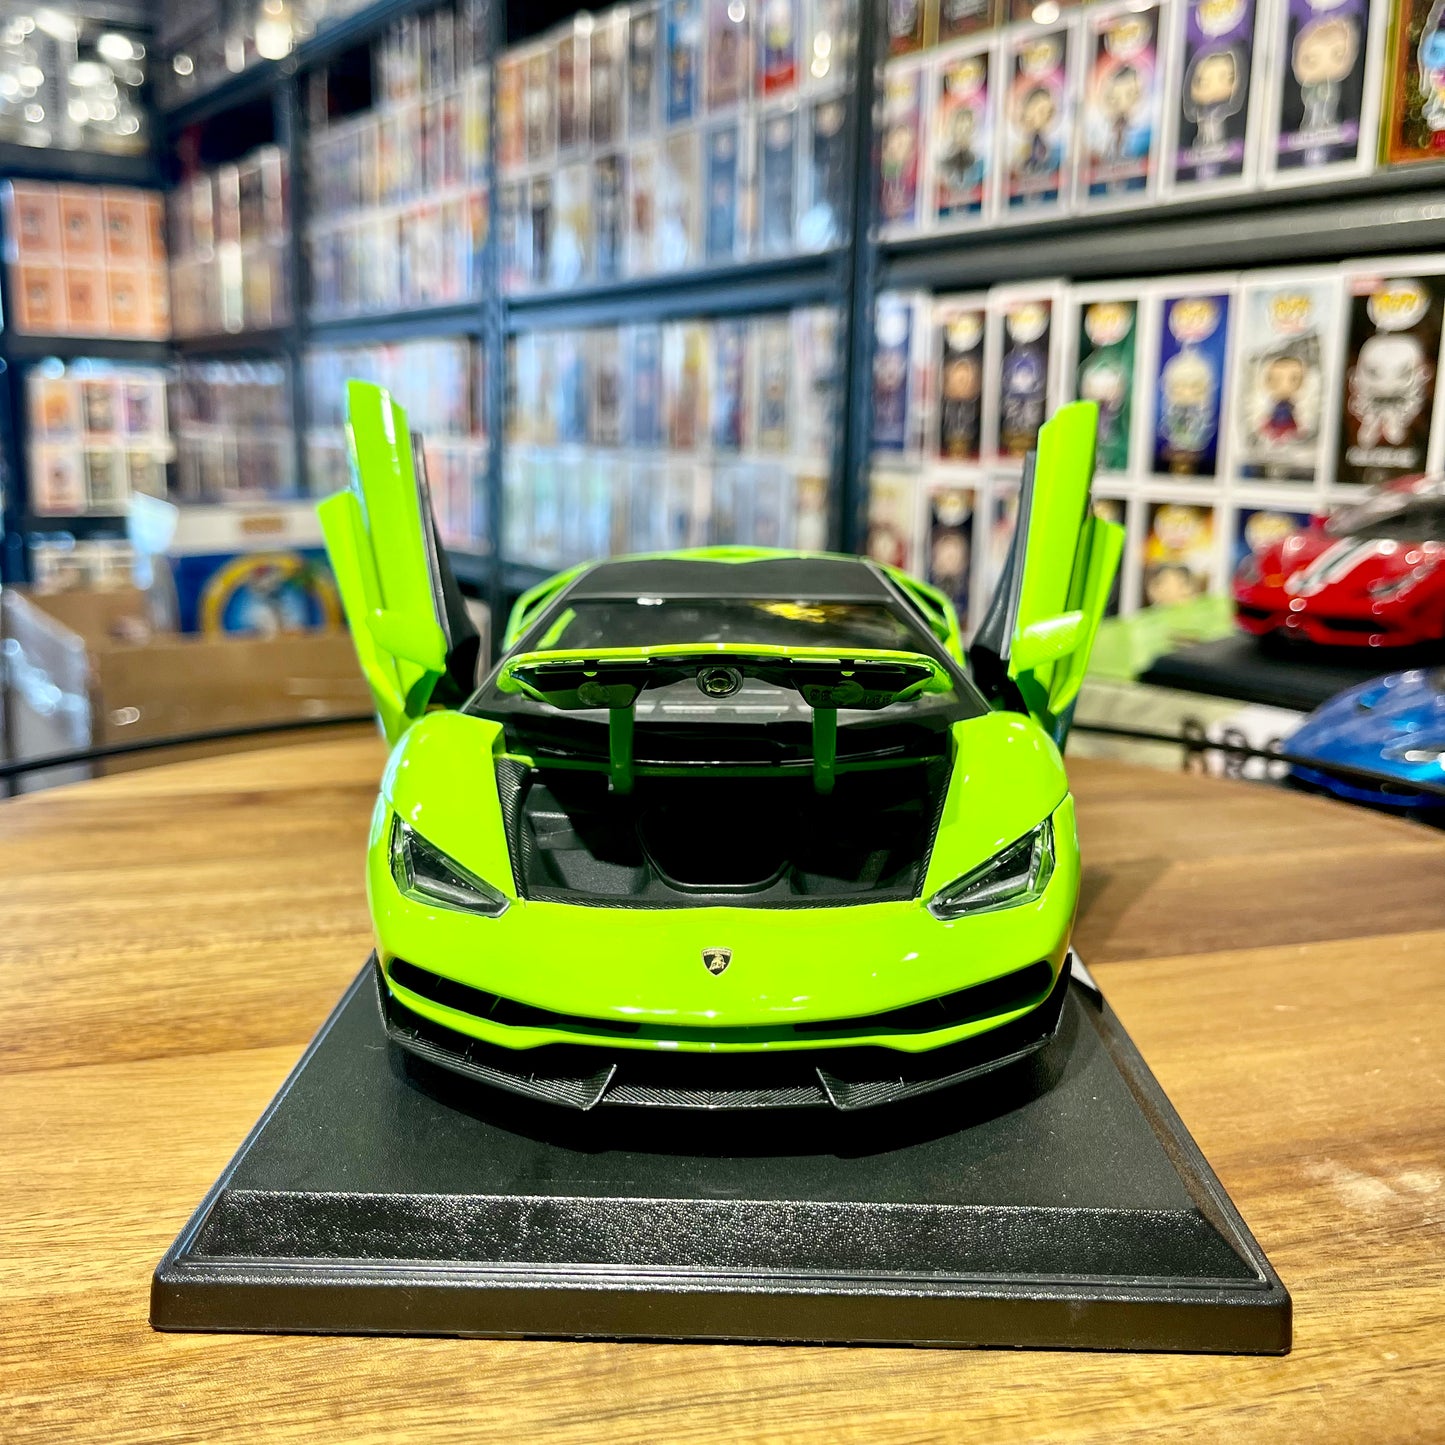 Maisto: Lamborghini Centenario 1:18 scale